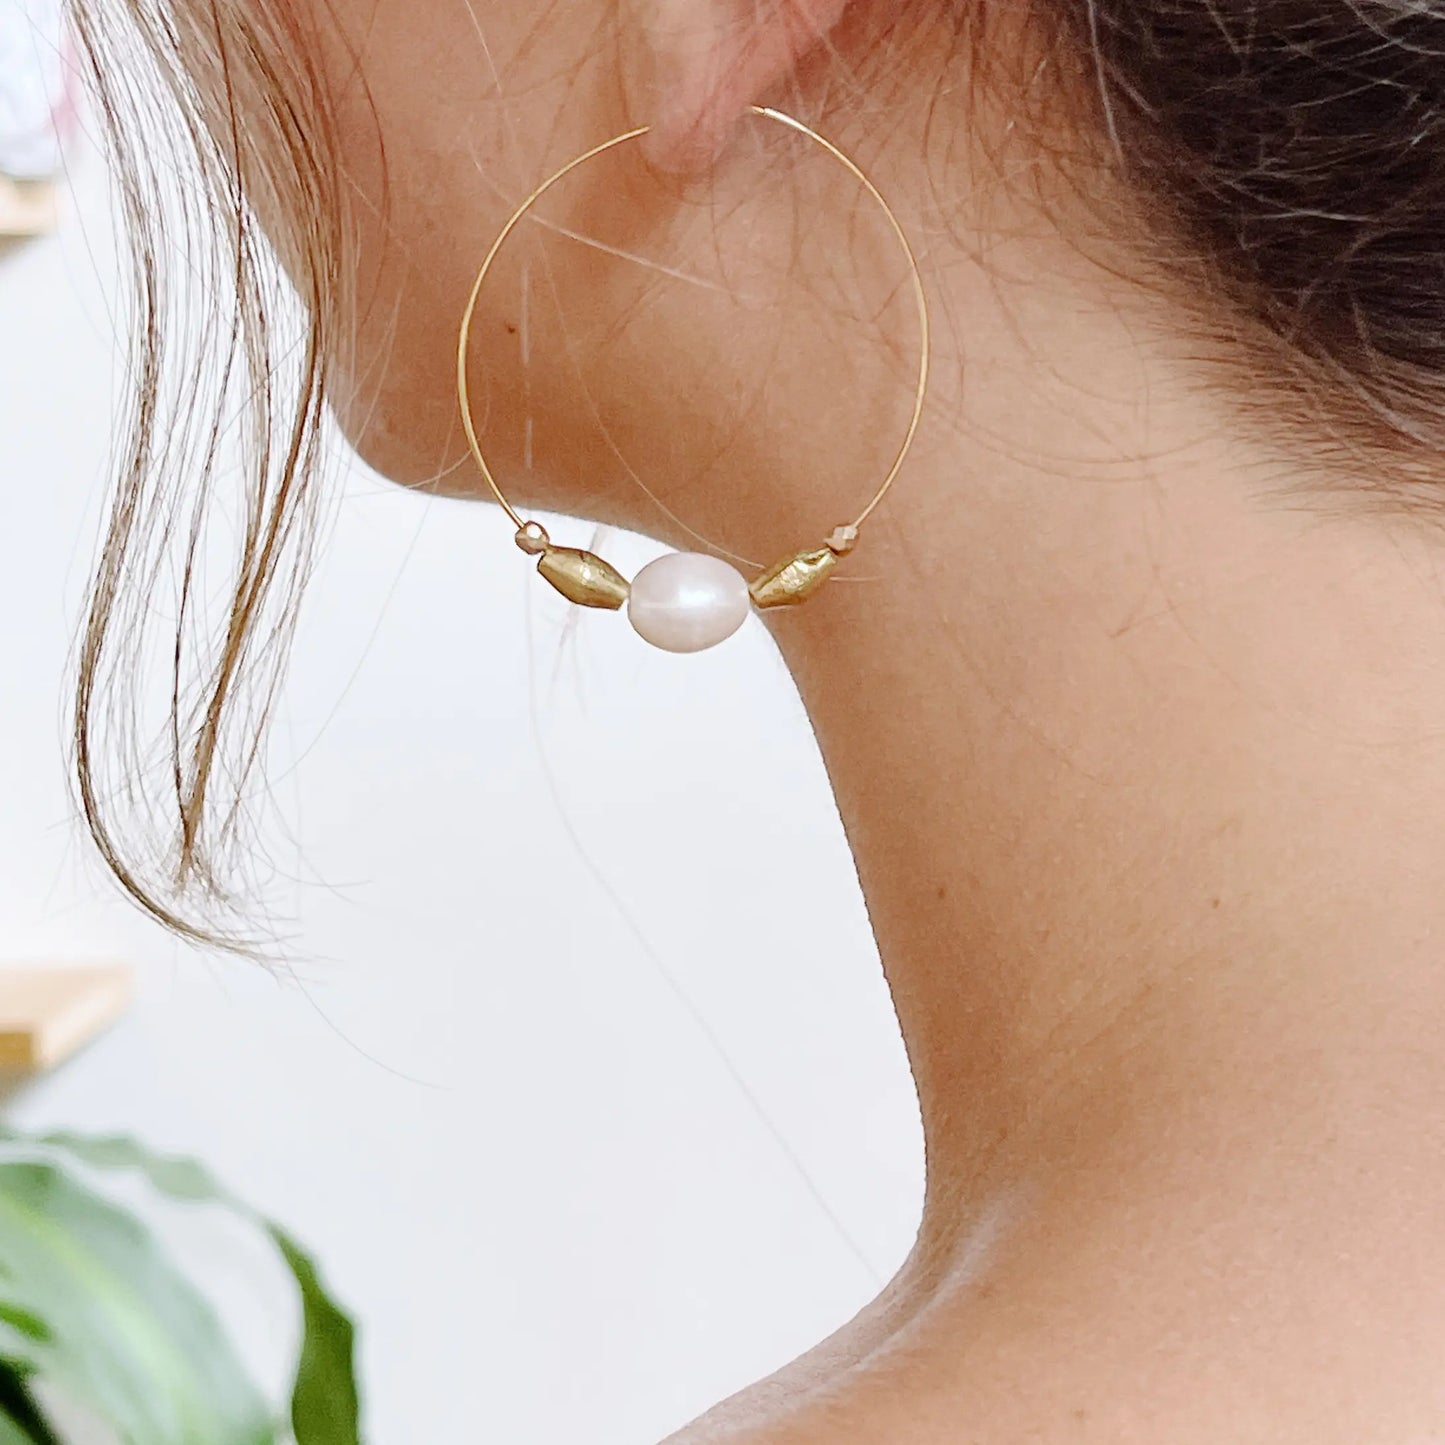 Long oval brass earrings